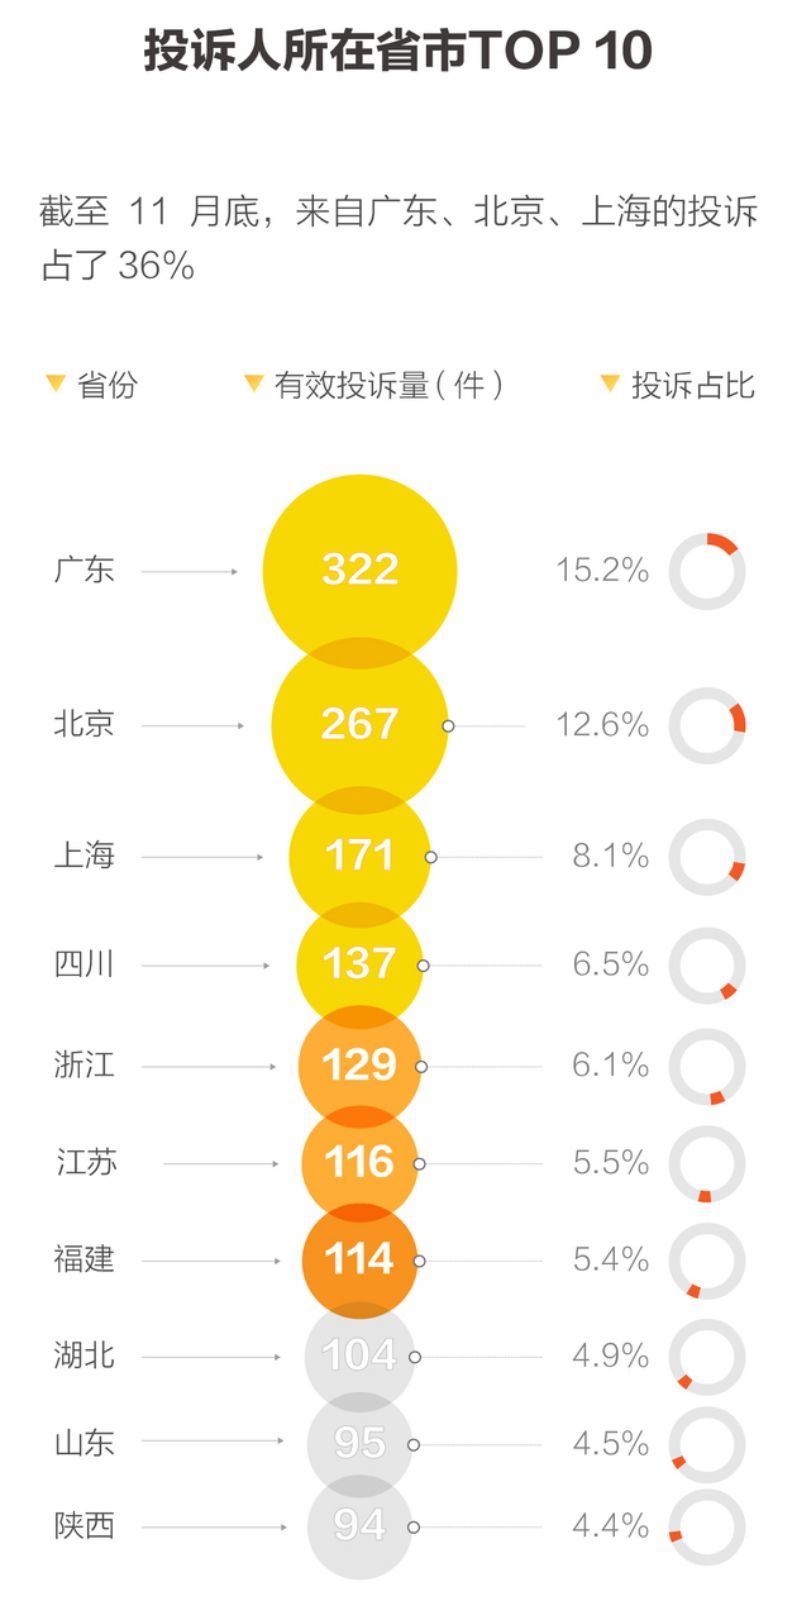 目前ofo在上海的投放量较顶峰时期减少40%